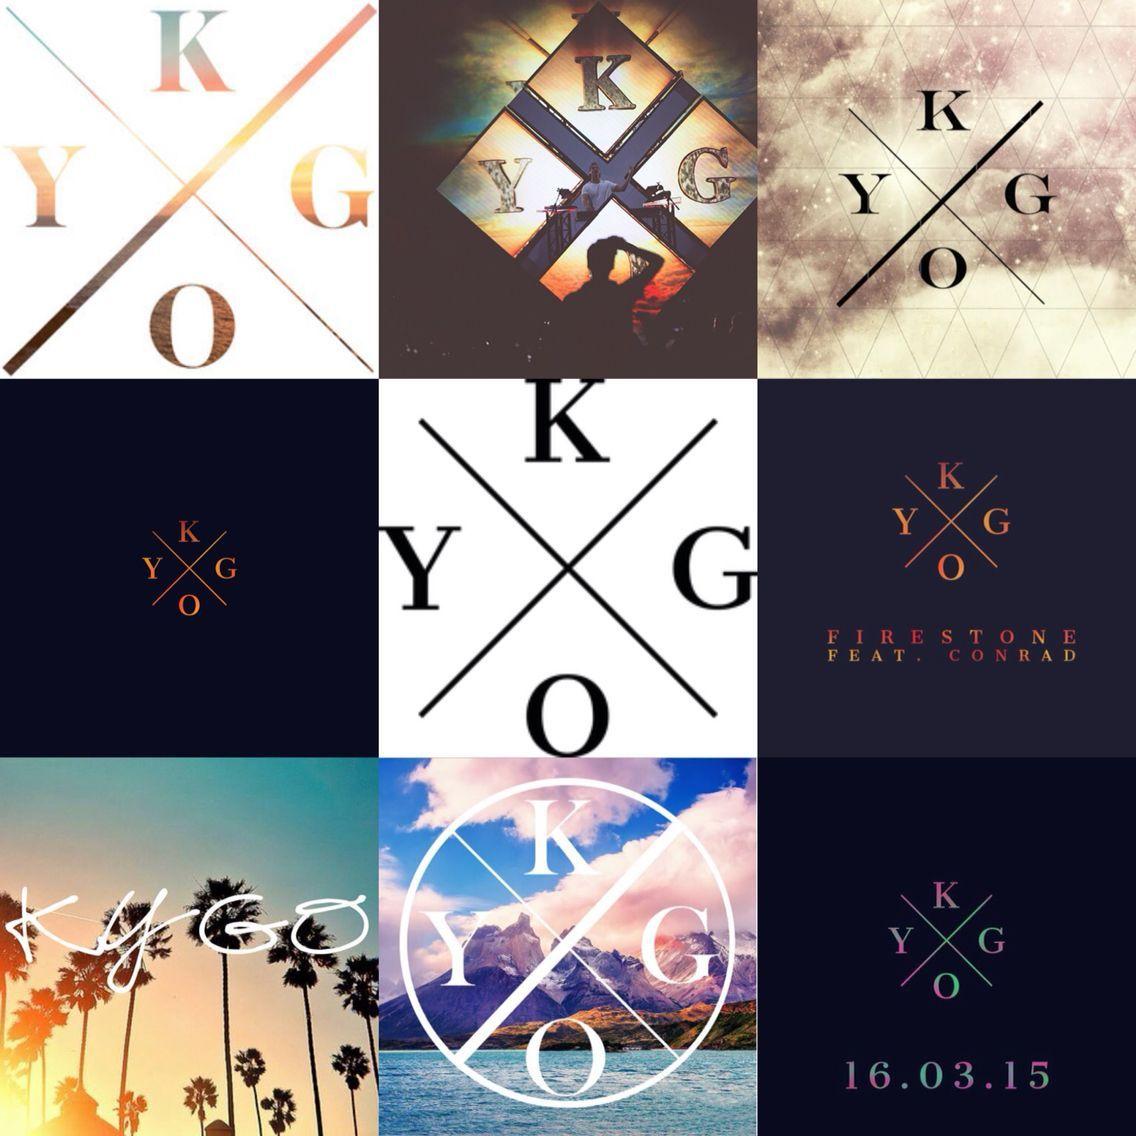 Kygo Logo - Kygo logo's